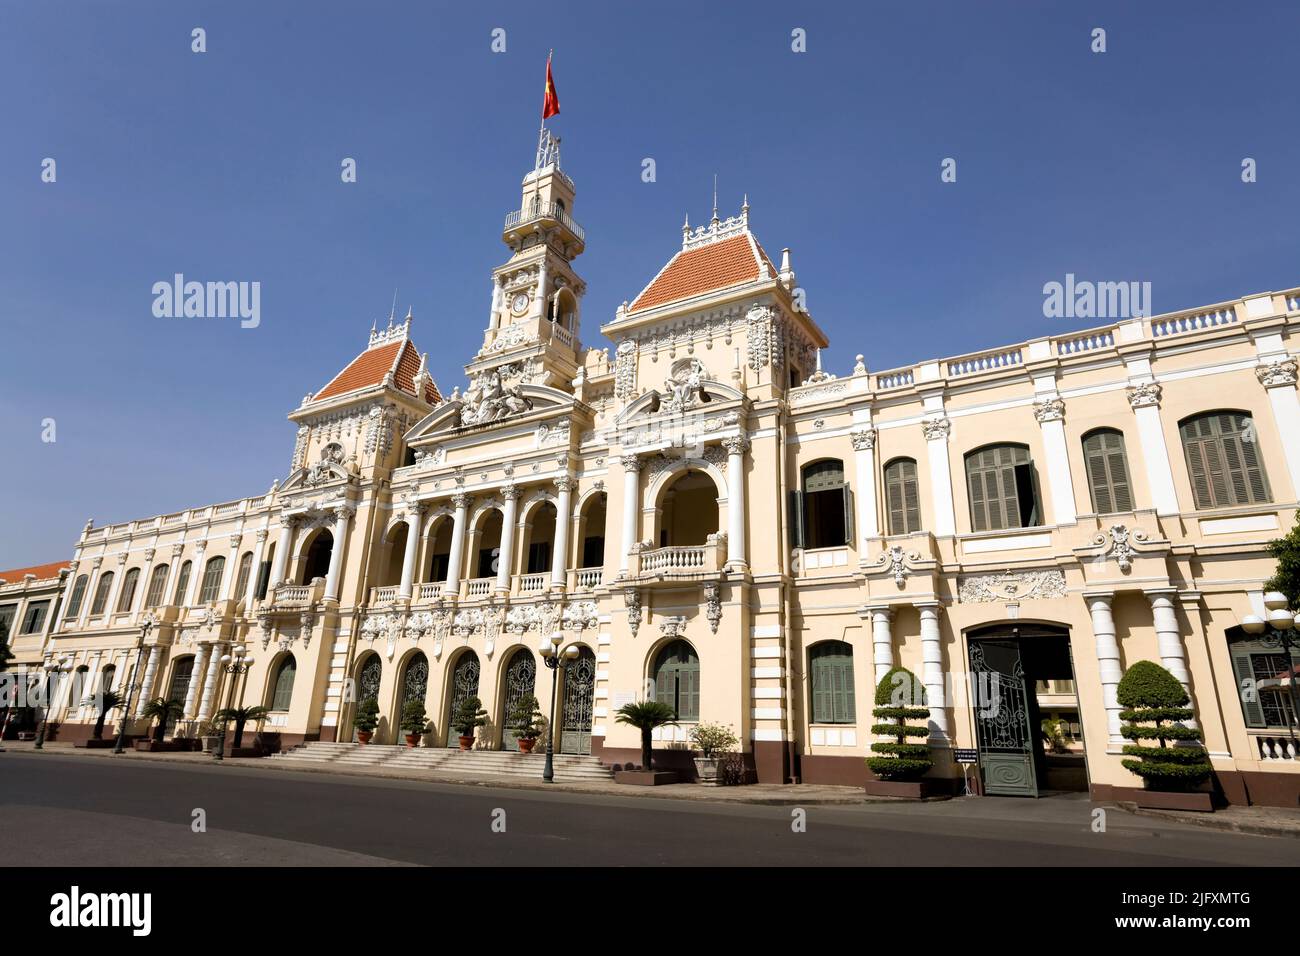 Ho Chi Minh City Hall o Hotel de Ville de Saigon è stato costruito nel 1902-1908 in stile coloniale francese per l'allora città di Saigon. È stato rinominato dopo Foto Stock